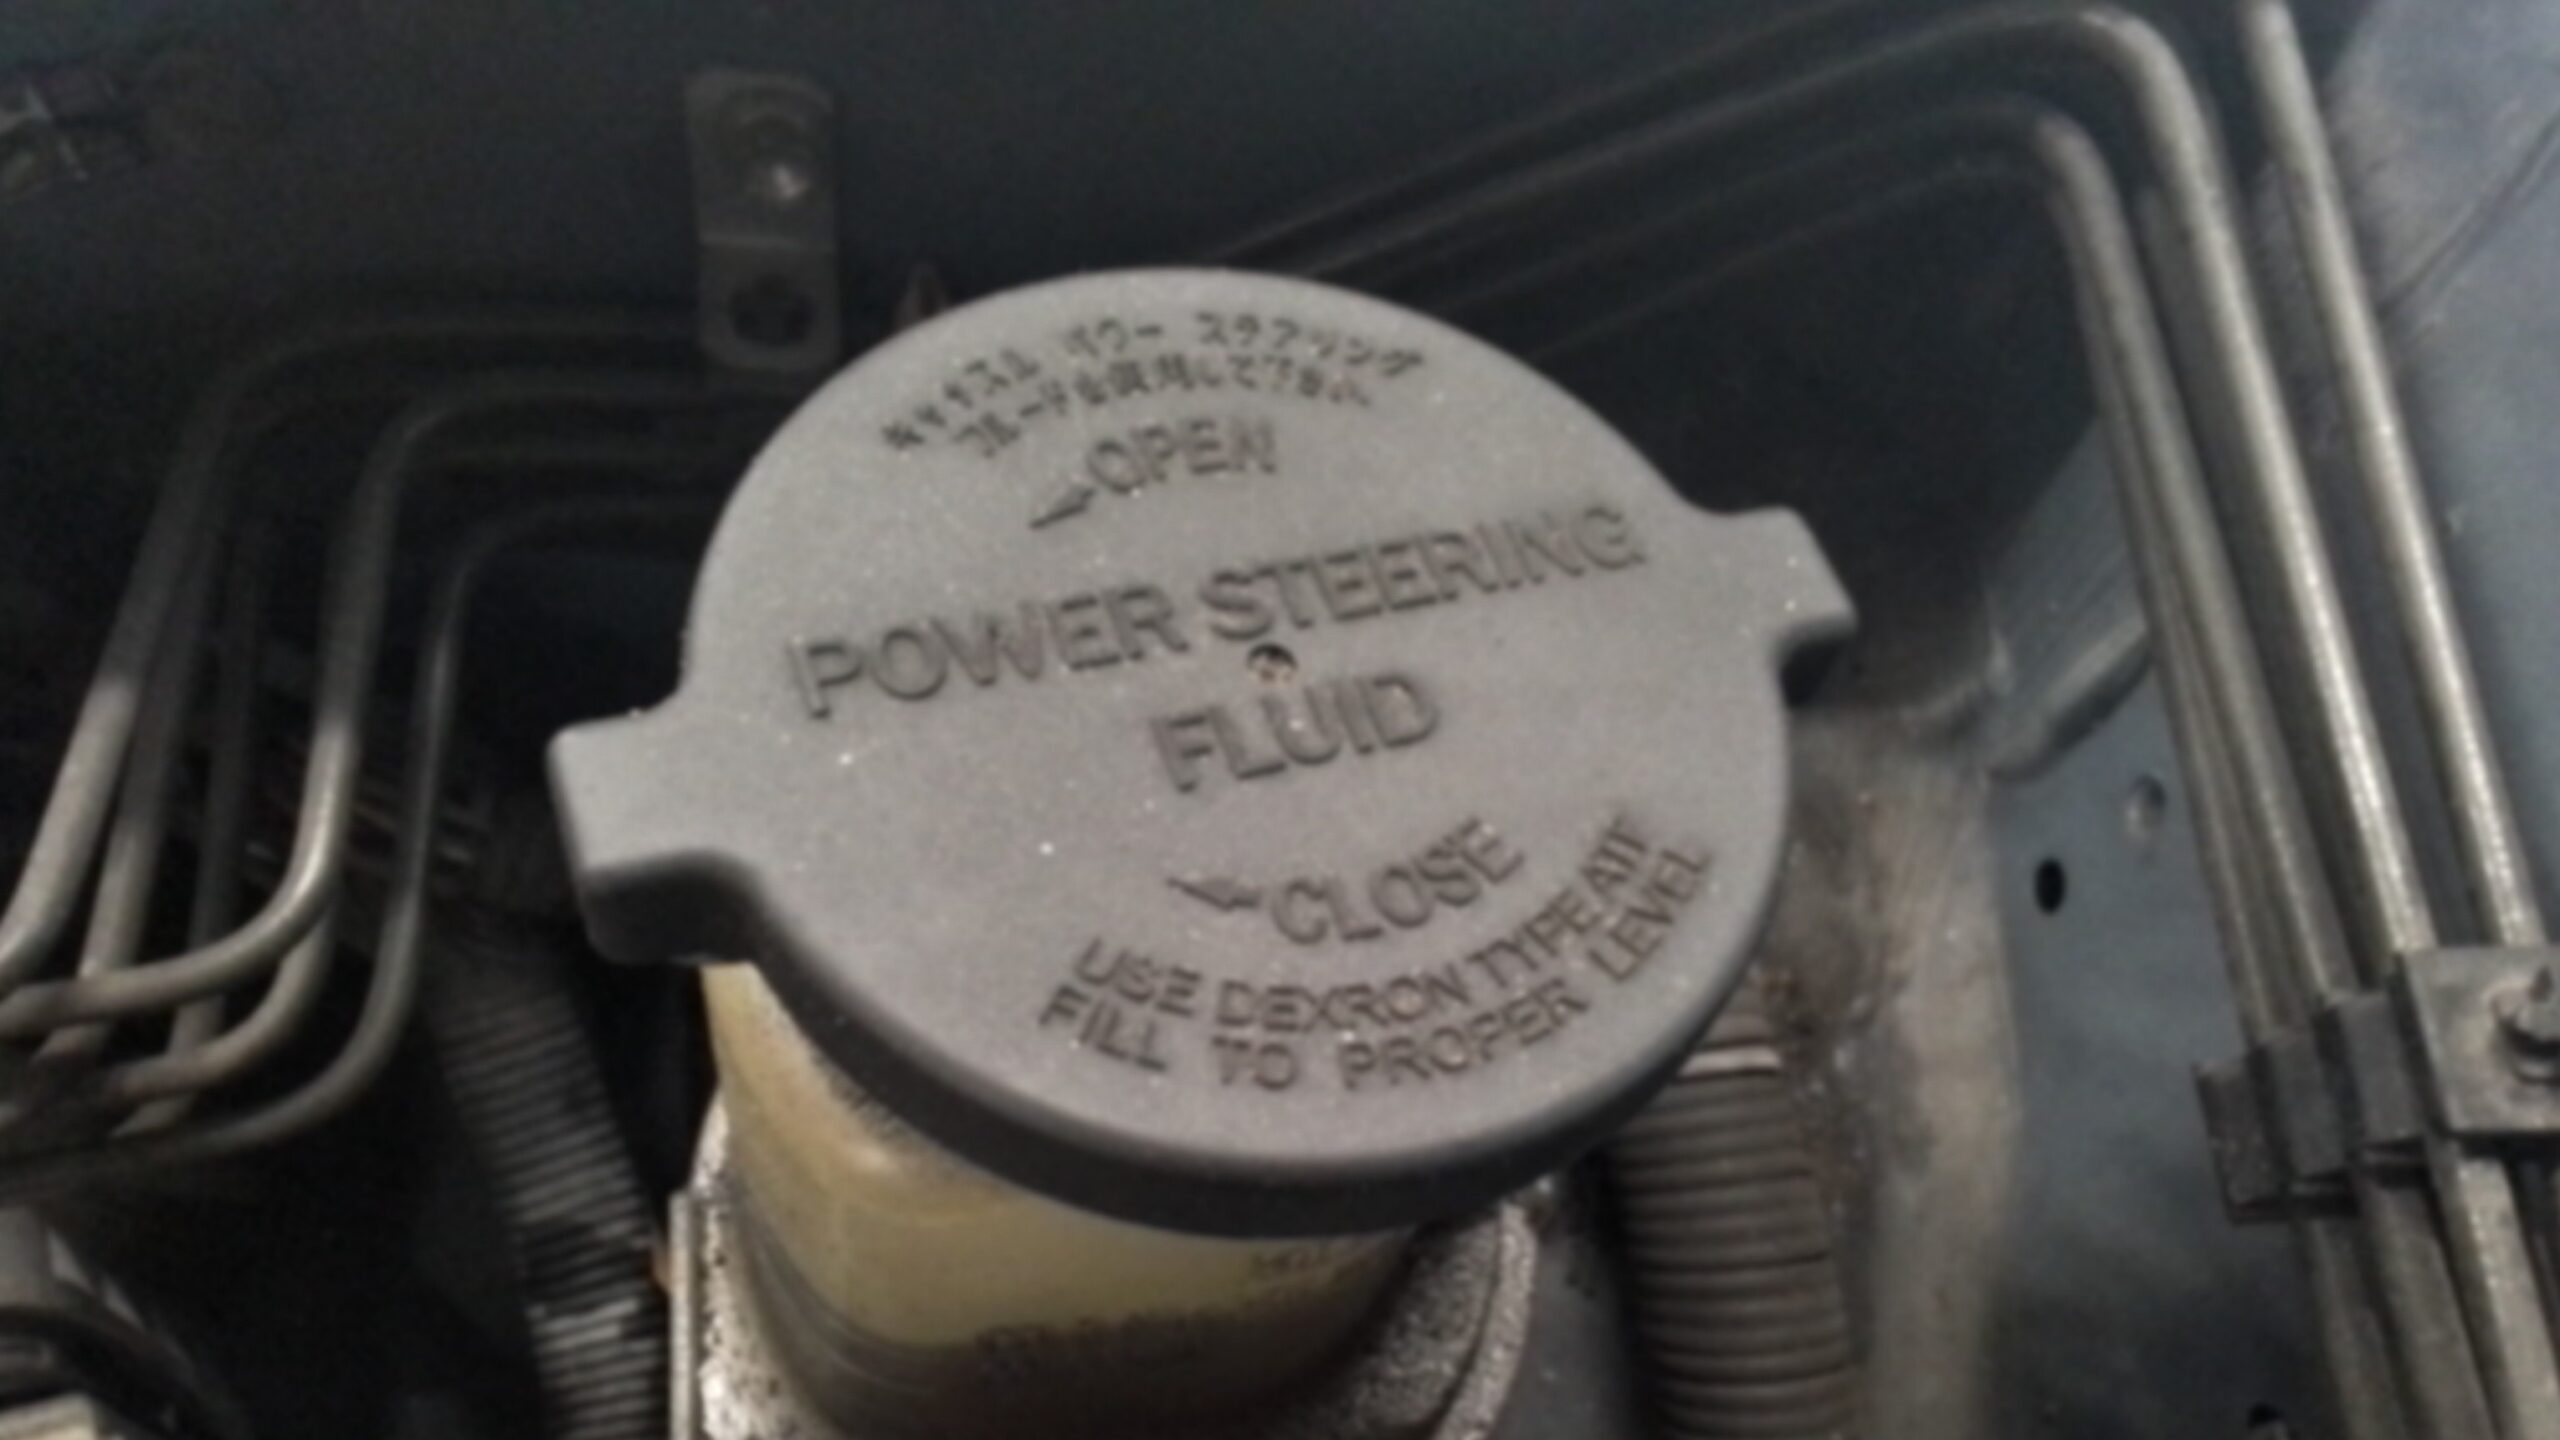 Power steering fluid